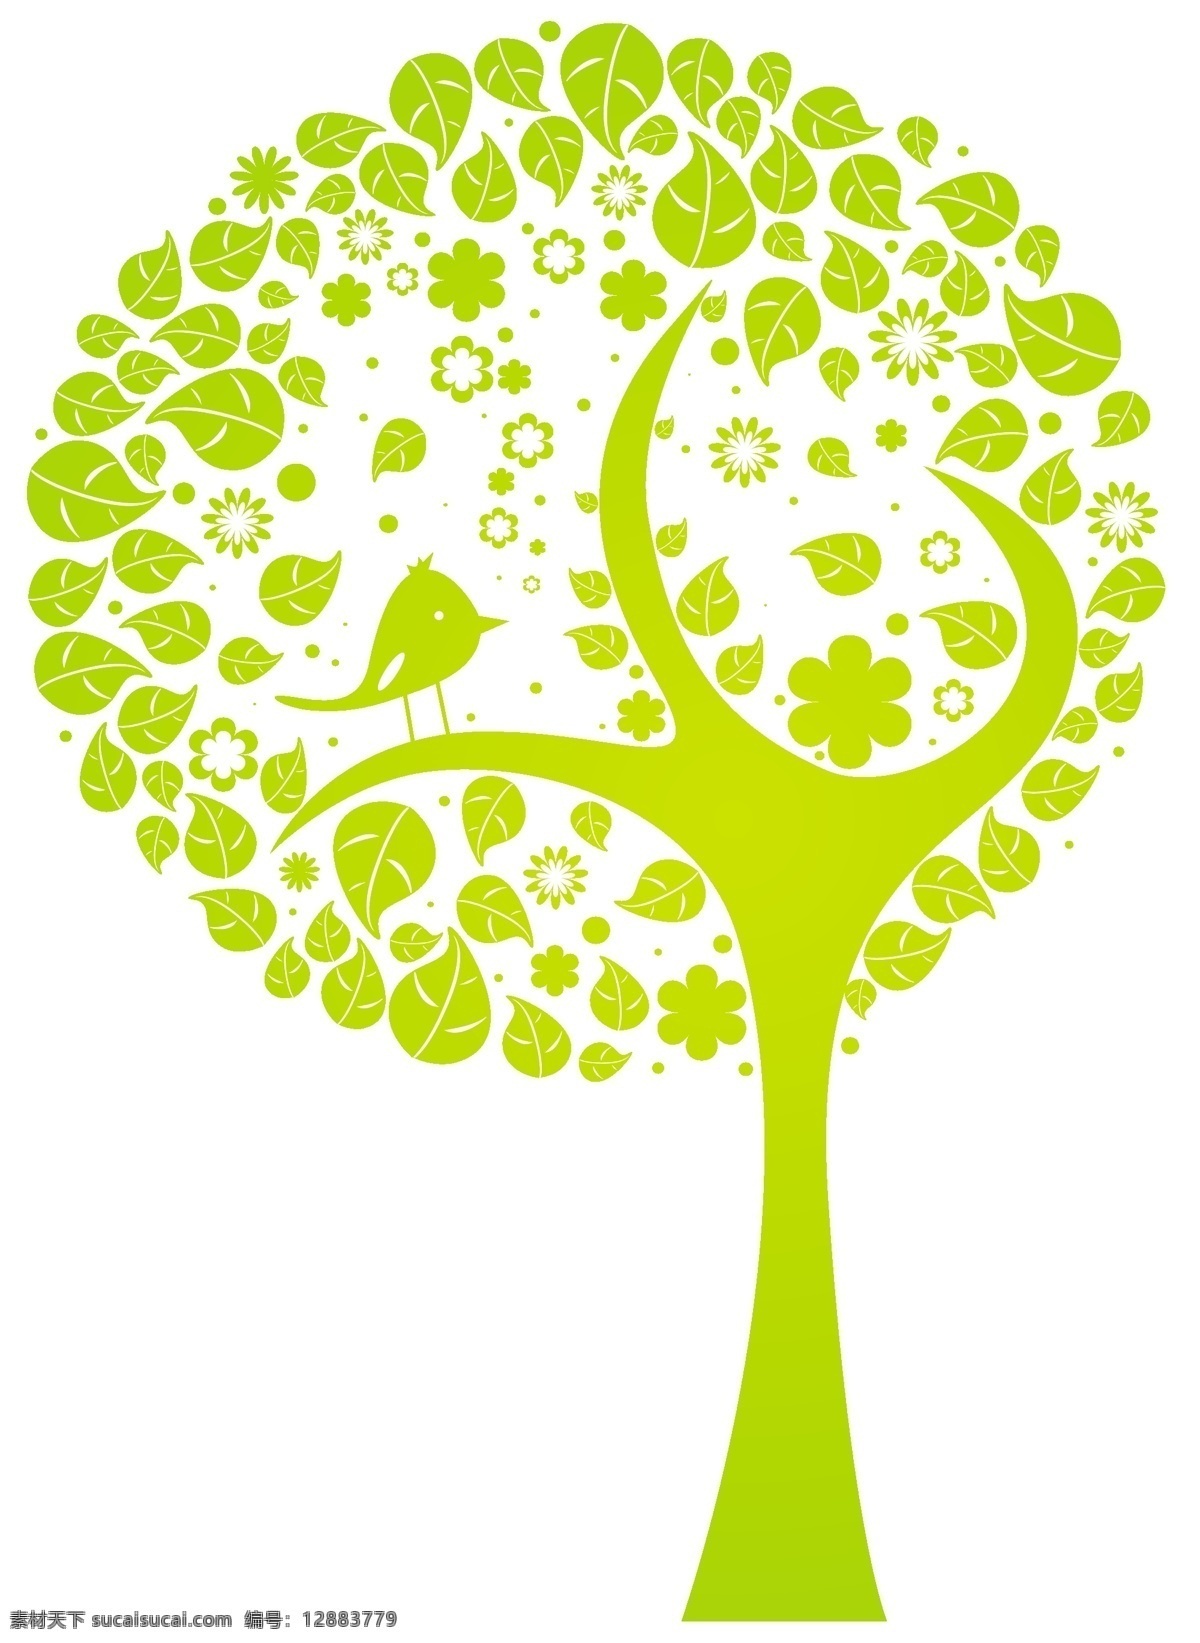 创意 树形 图案 矢量 公益 绿色 矢量图 树木 小鸟 其他矢量图